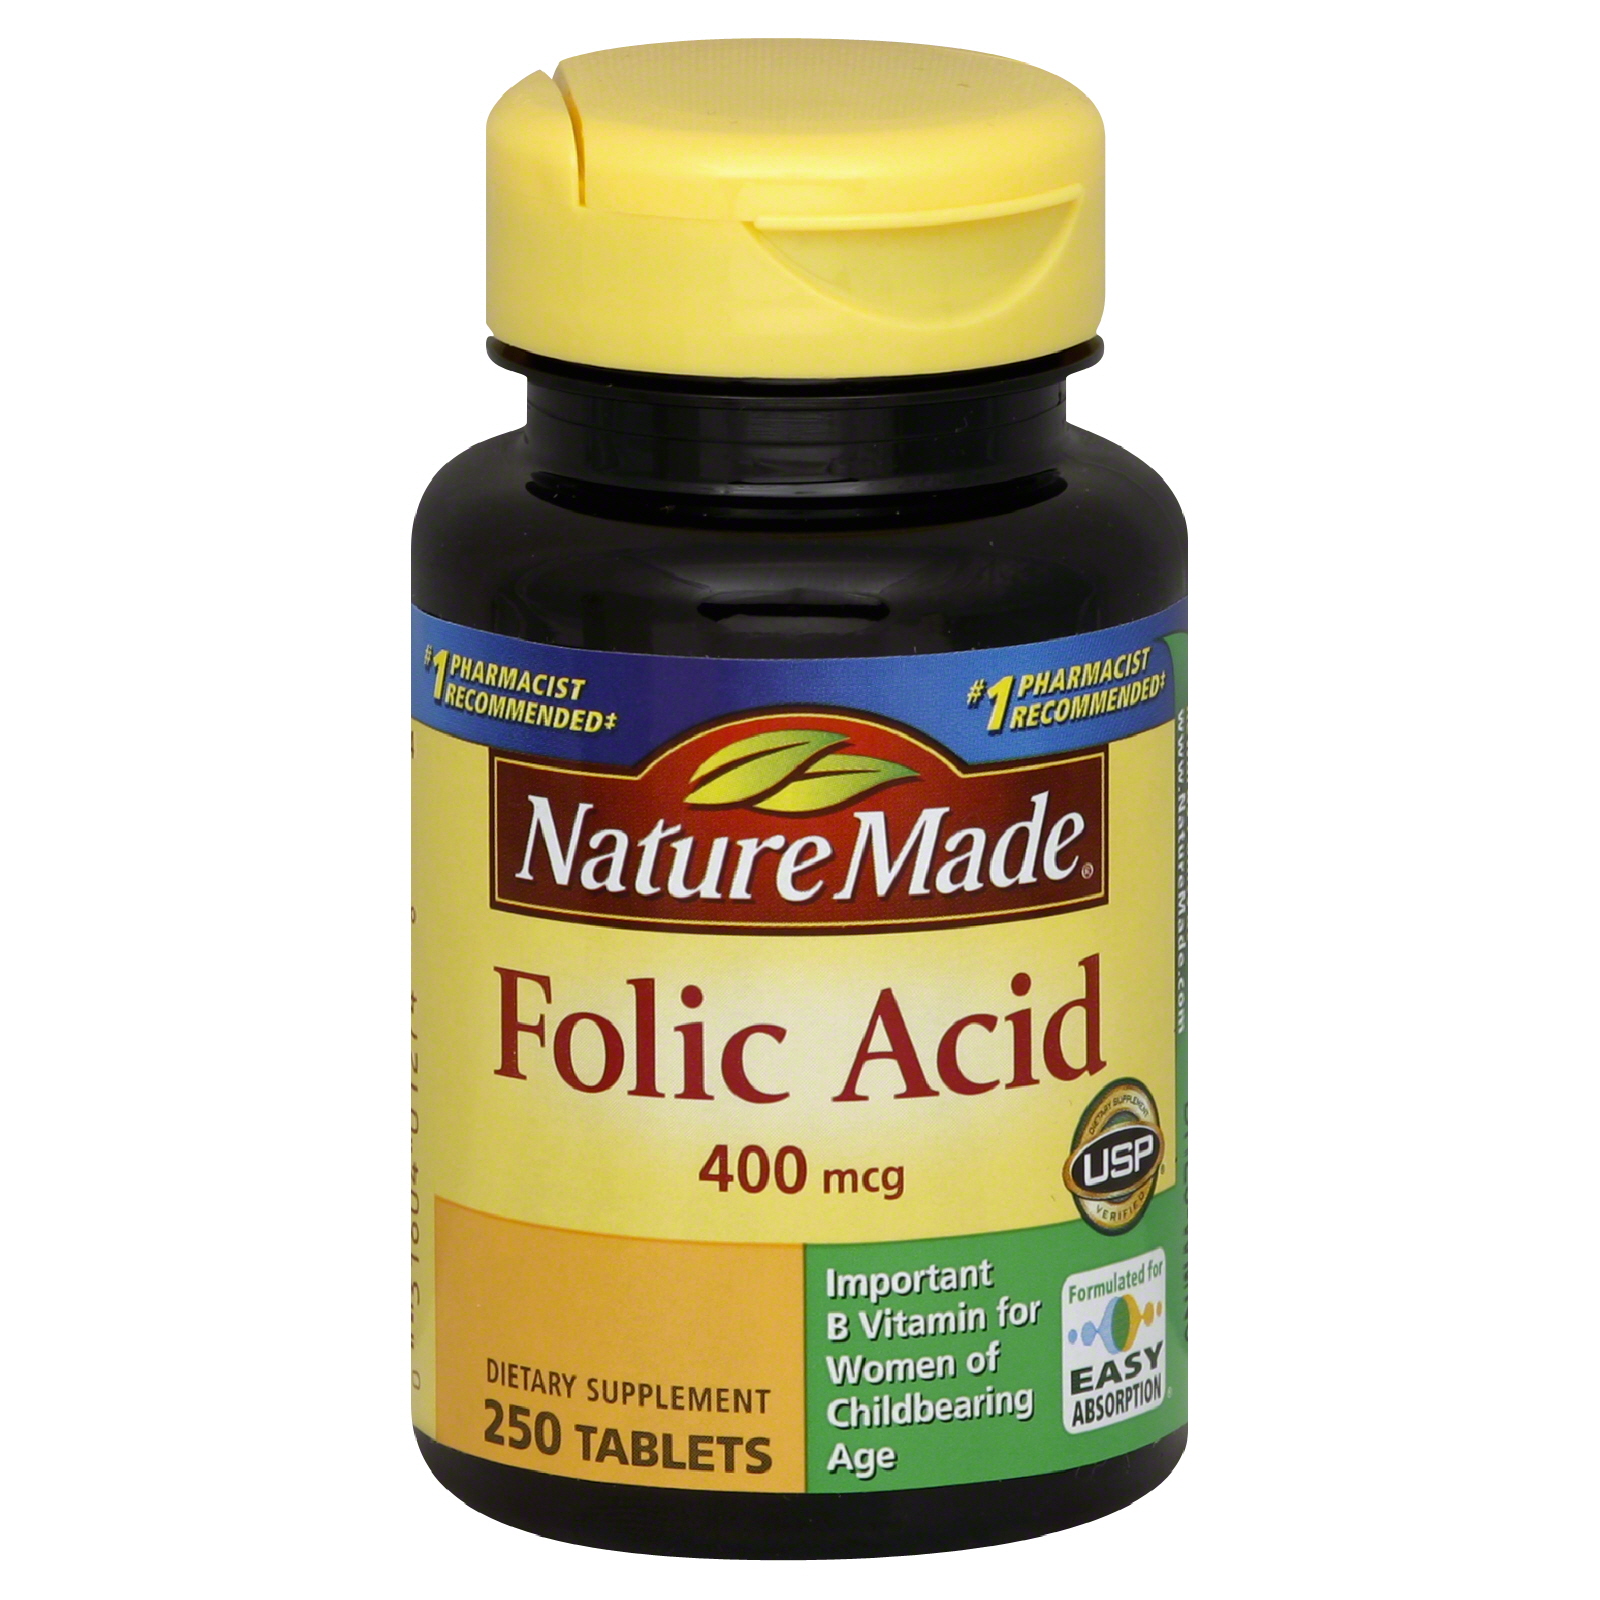 Nature Made Folic Acid, 400 mcg, USP Tablets, 250 Tablets